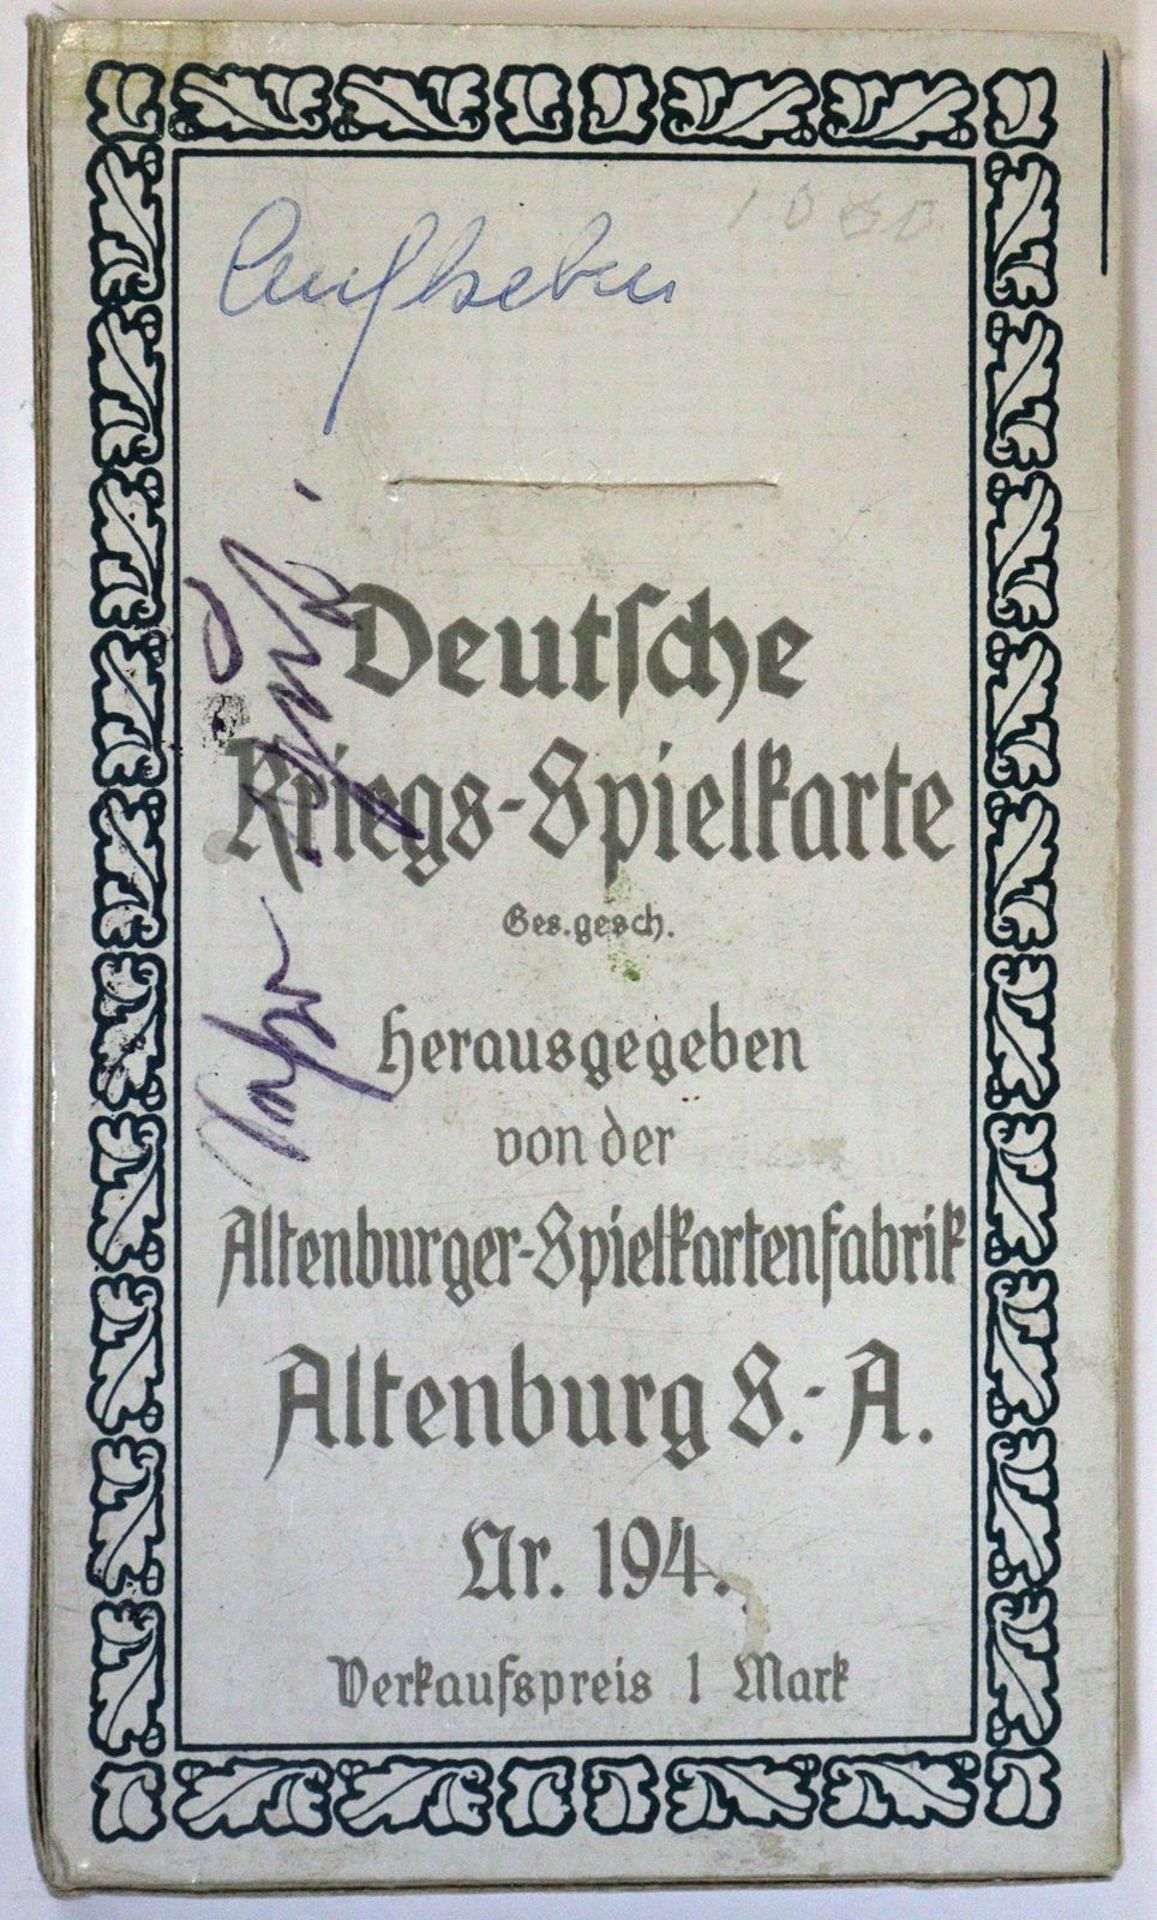 Deutsche Kriegs-Spielkarte. - Image 7 of 7